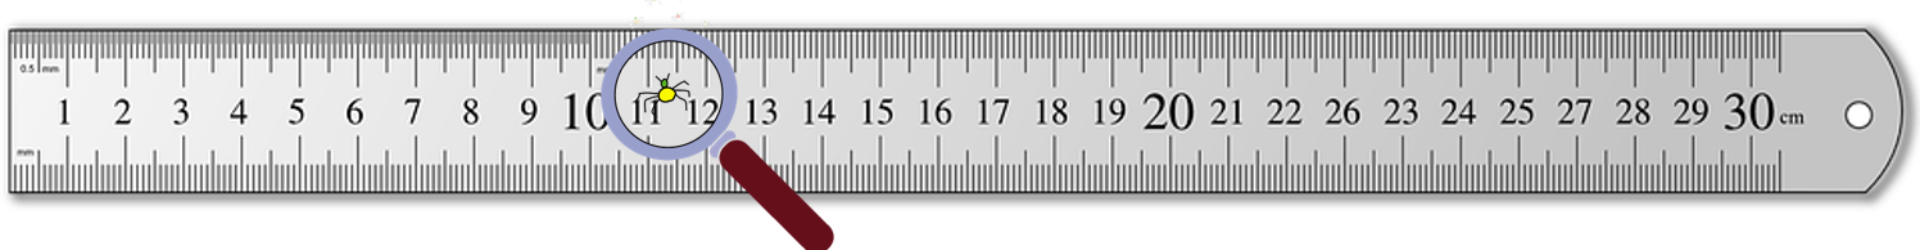 ruler clipart 30 cm